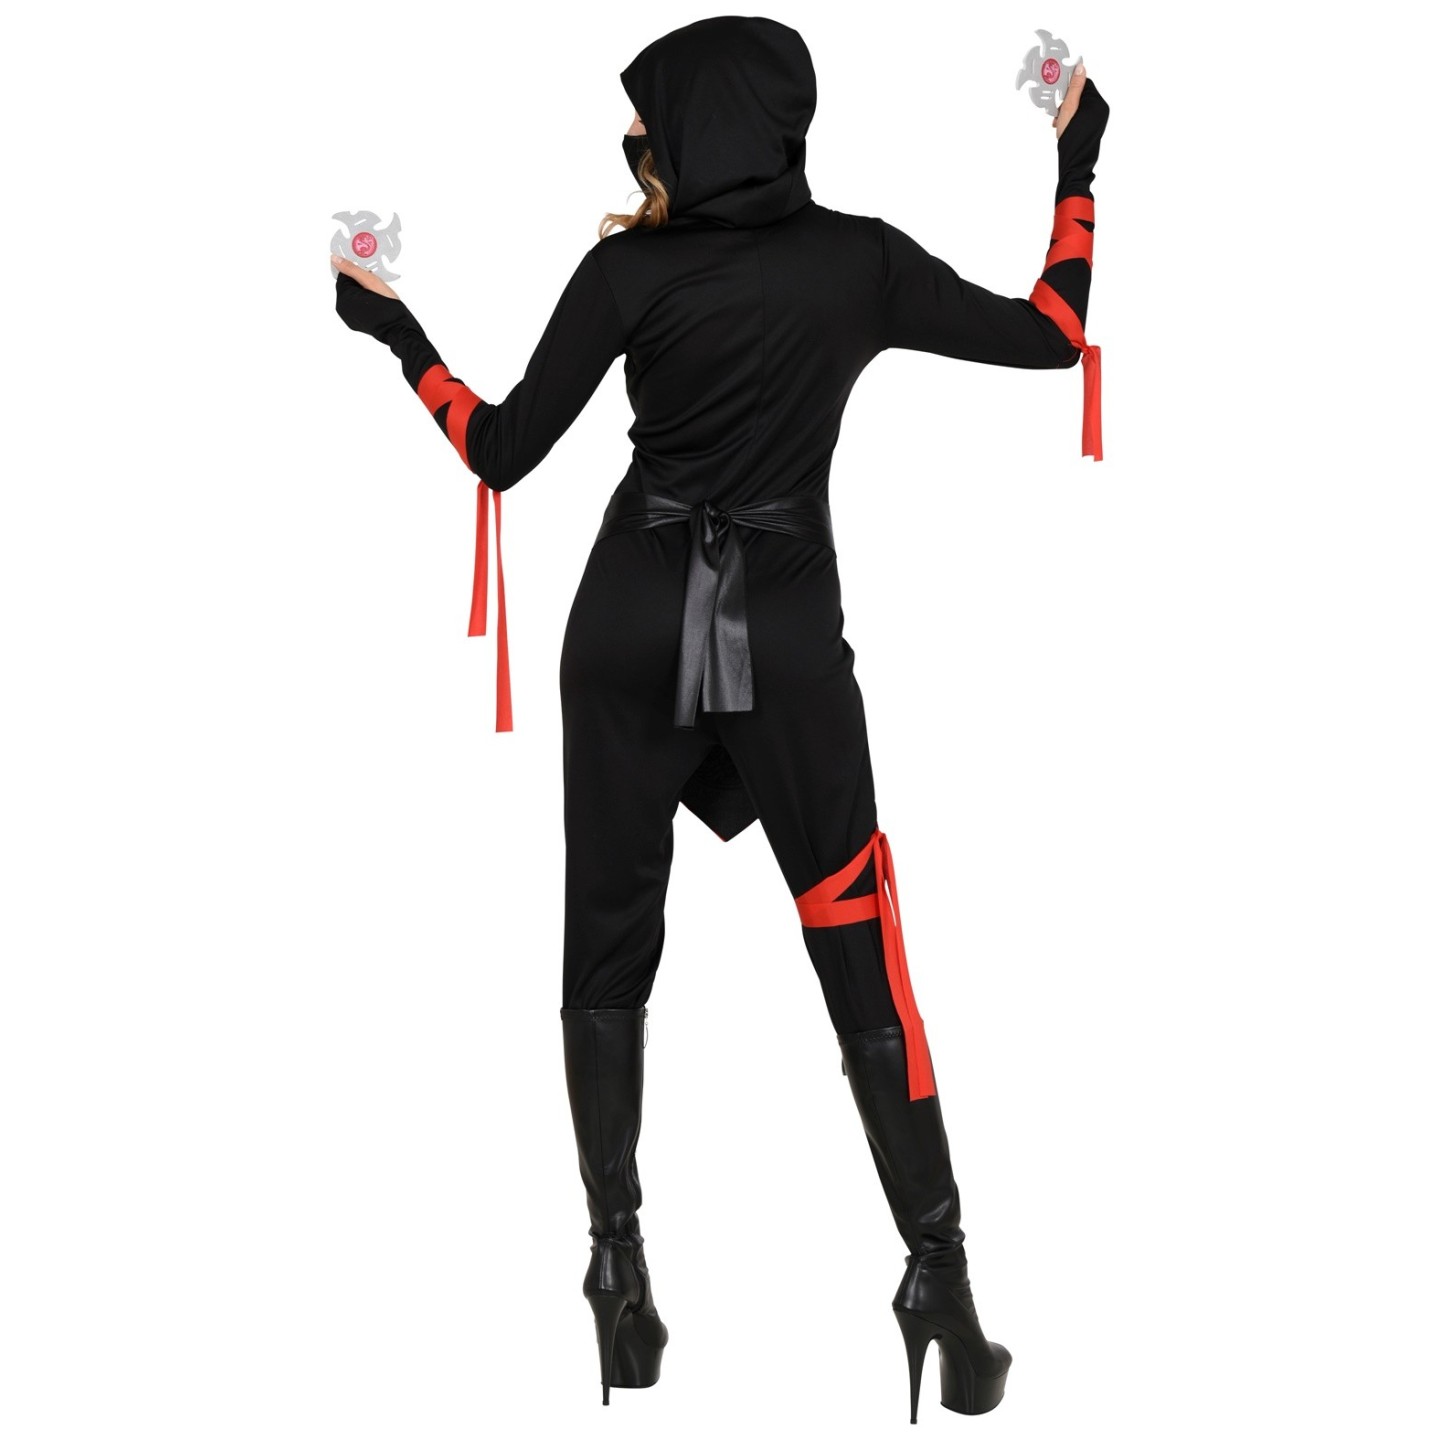 Ninja kostuum dames zwart rood Jokershop.be - Verkleedwinkel